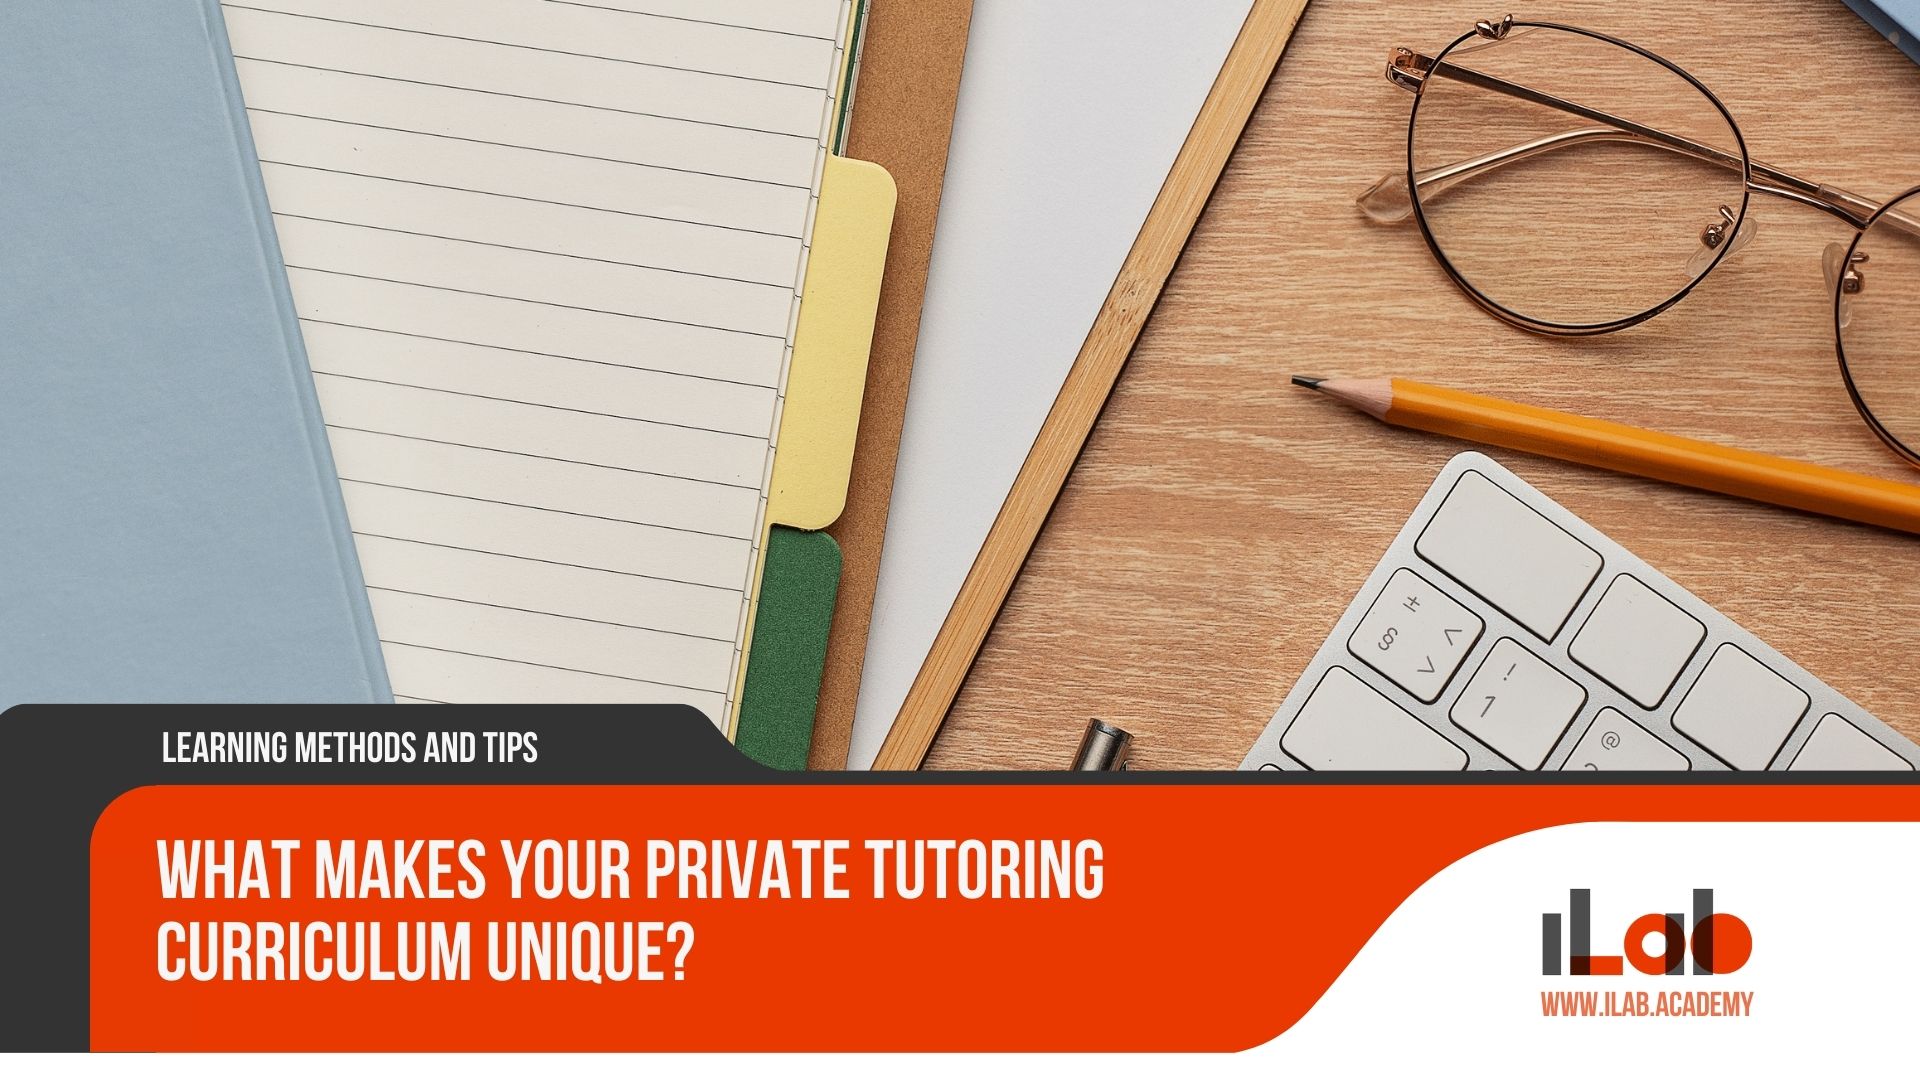 What Makes Your Private Tutoring Curriculum Unique?